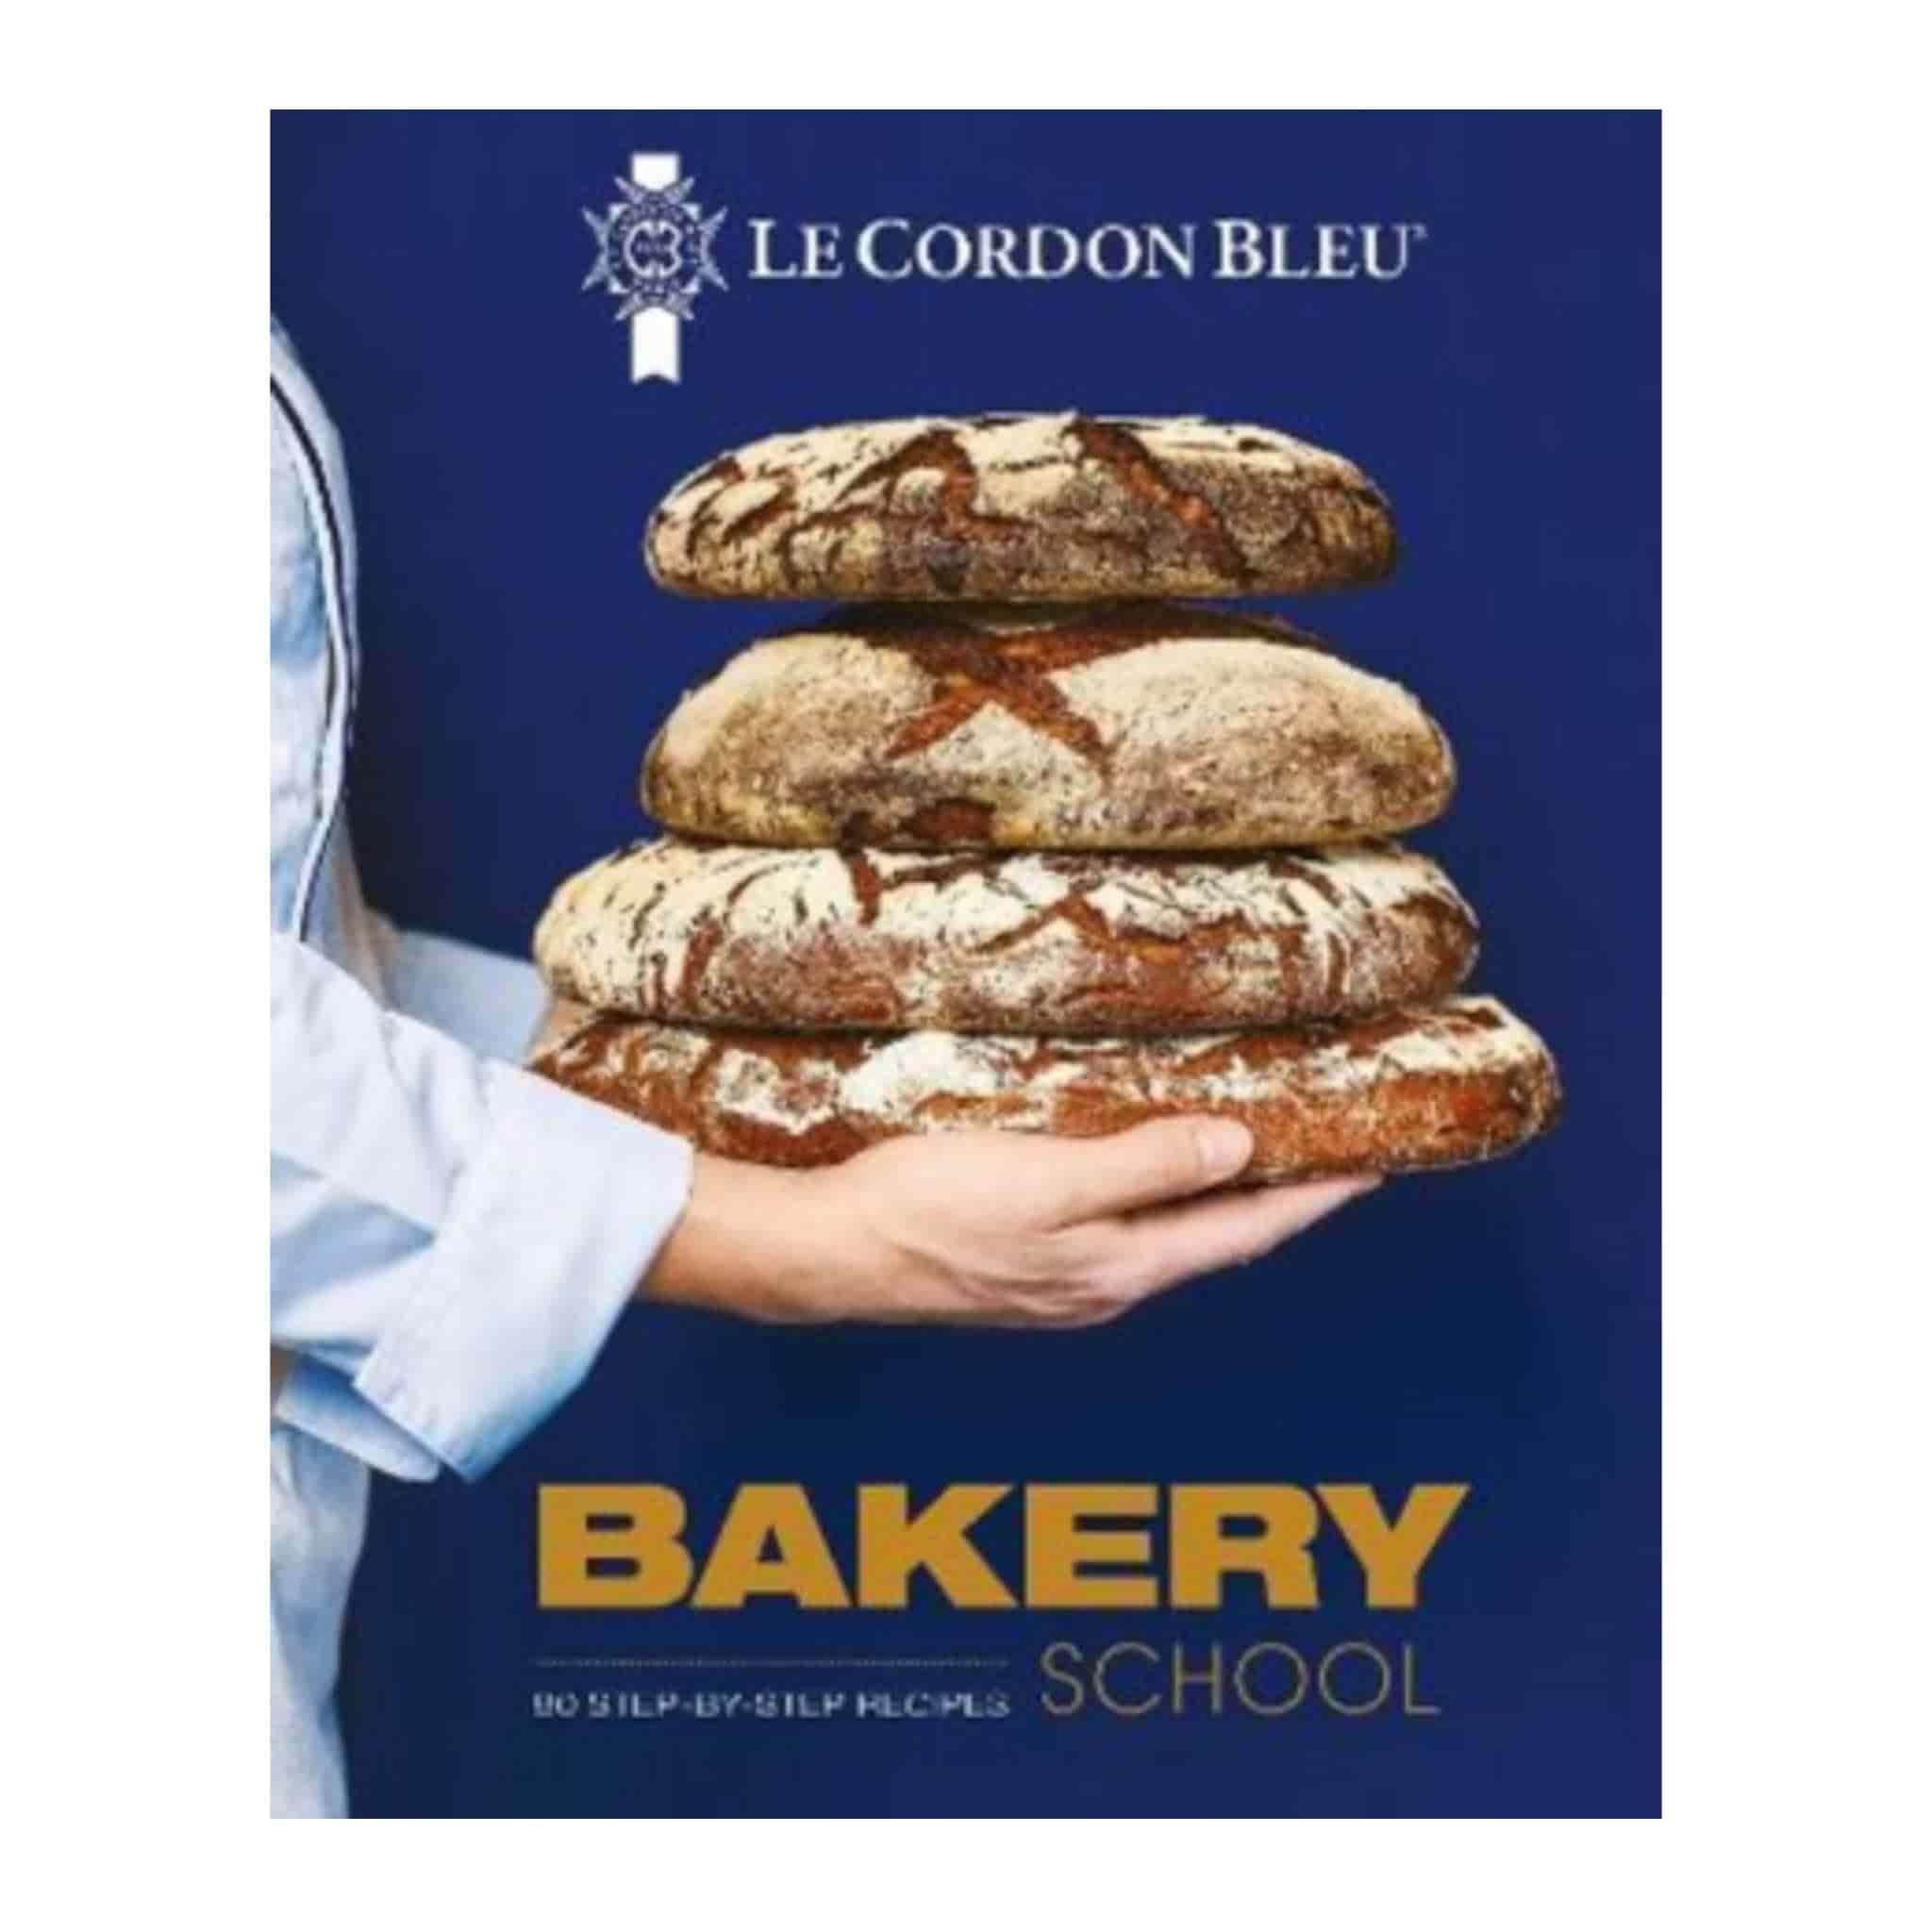 Le Cordon Bleu Bakery School, by Le Cordon Bleu